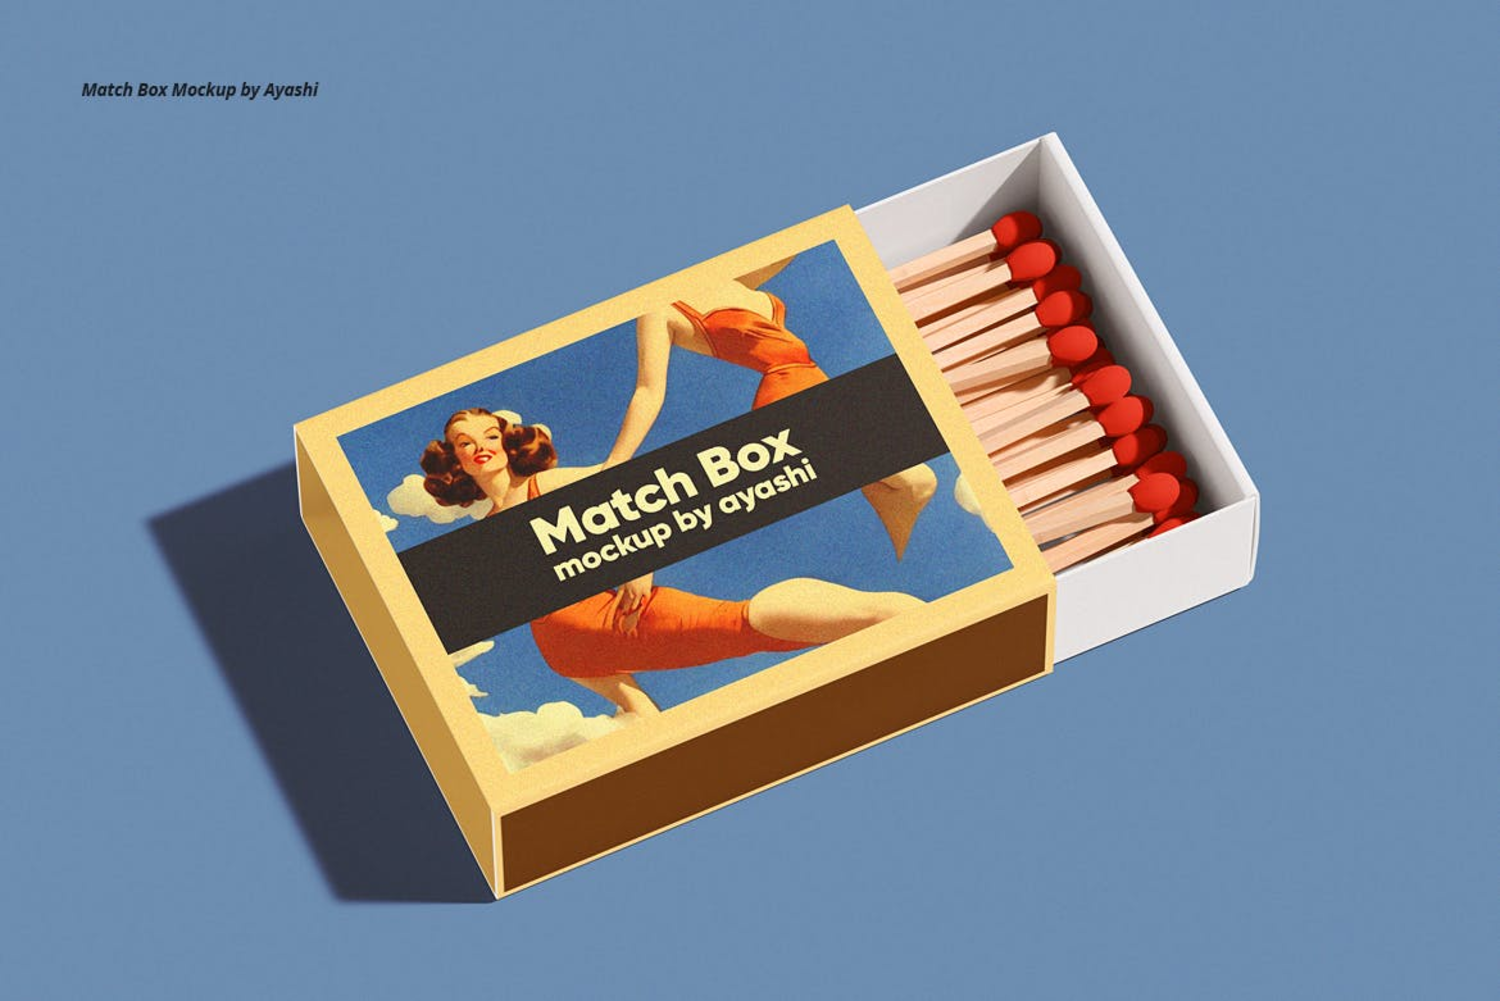 3322 火柴盒外观包装设计模板PSD样机素材 Match Box Mockup